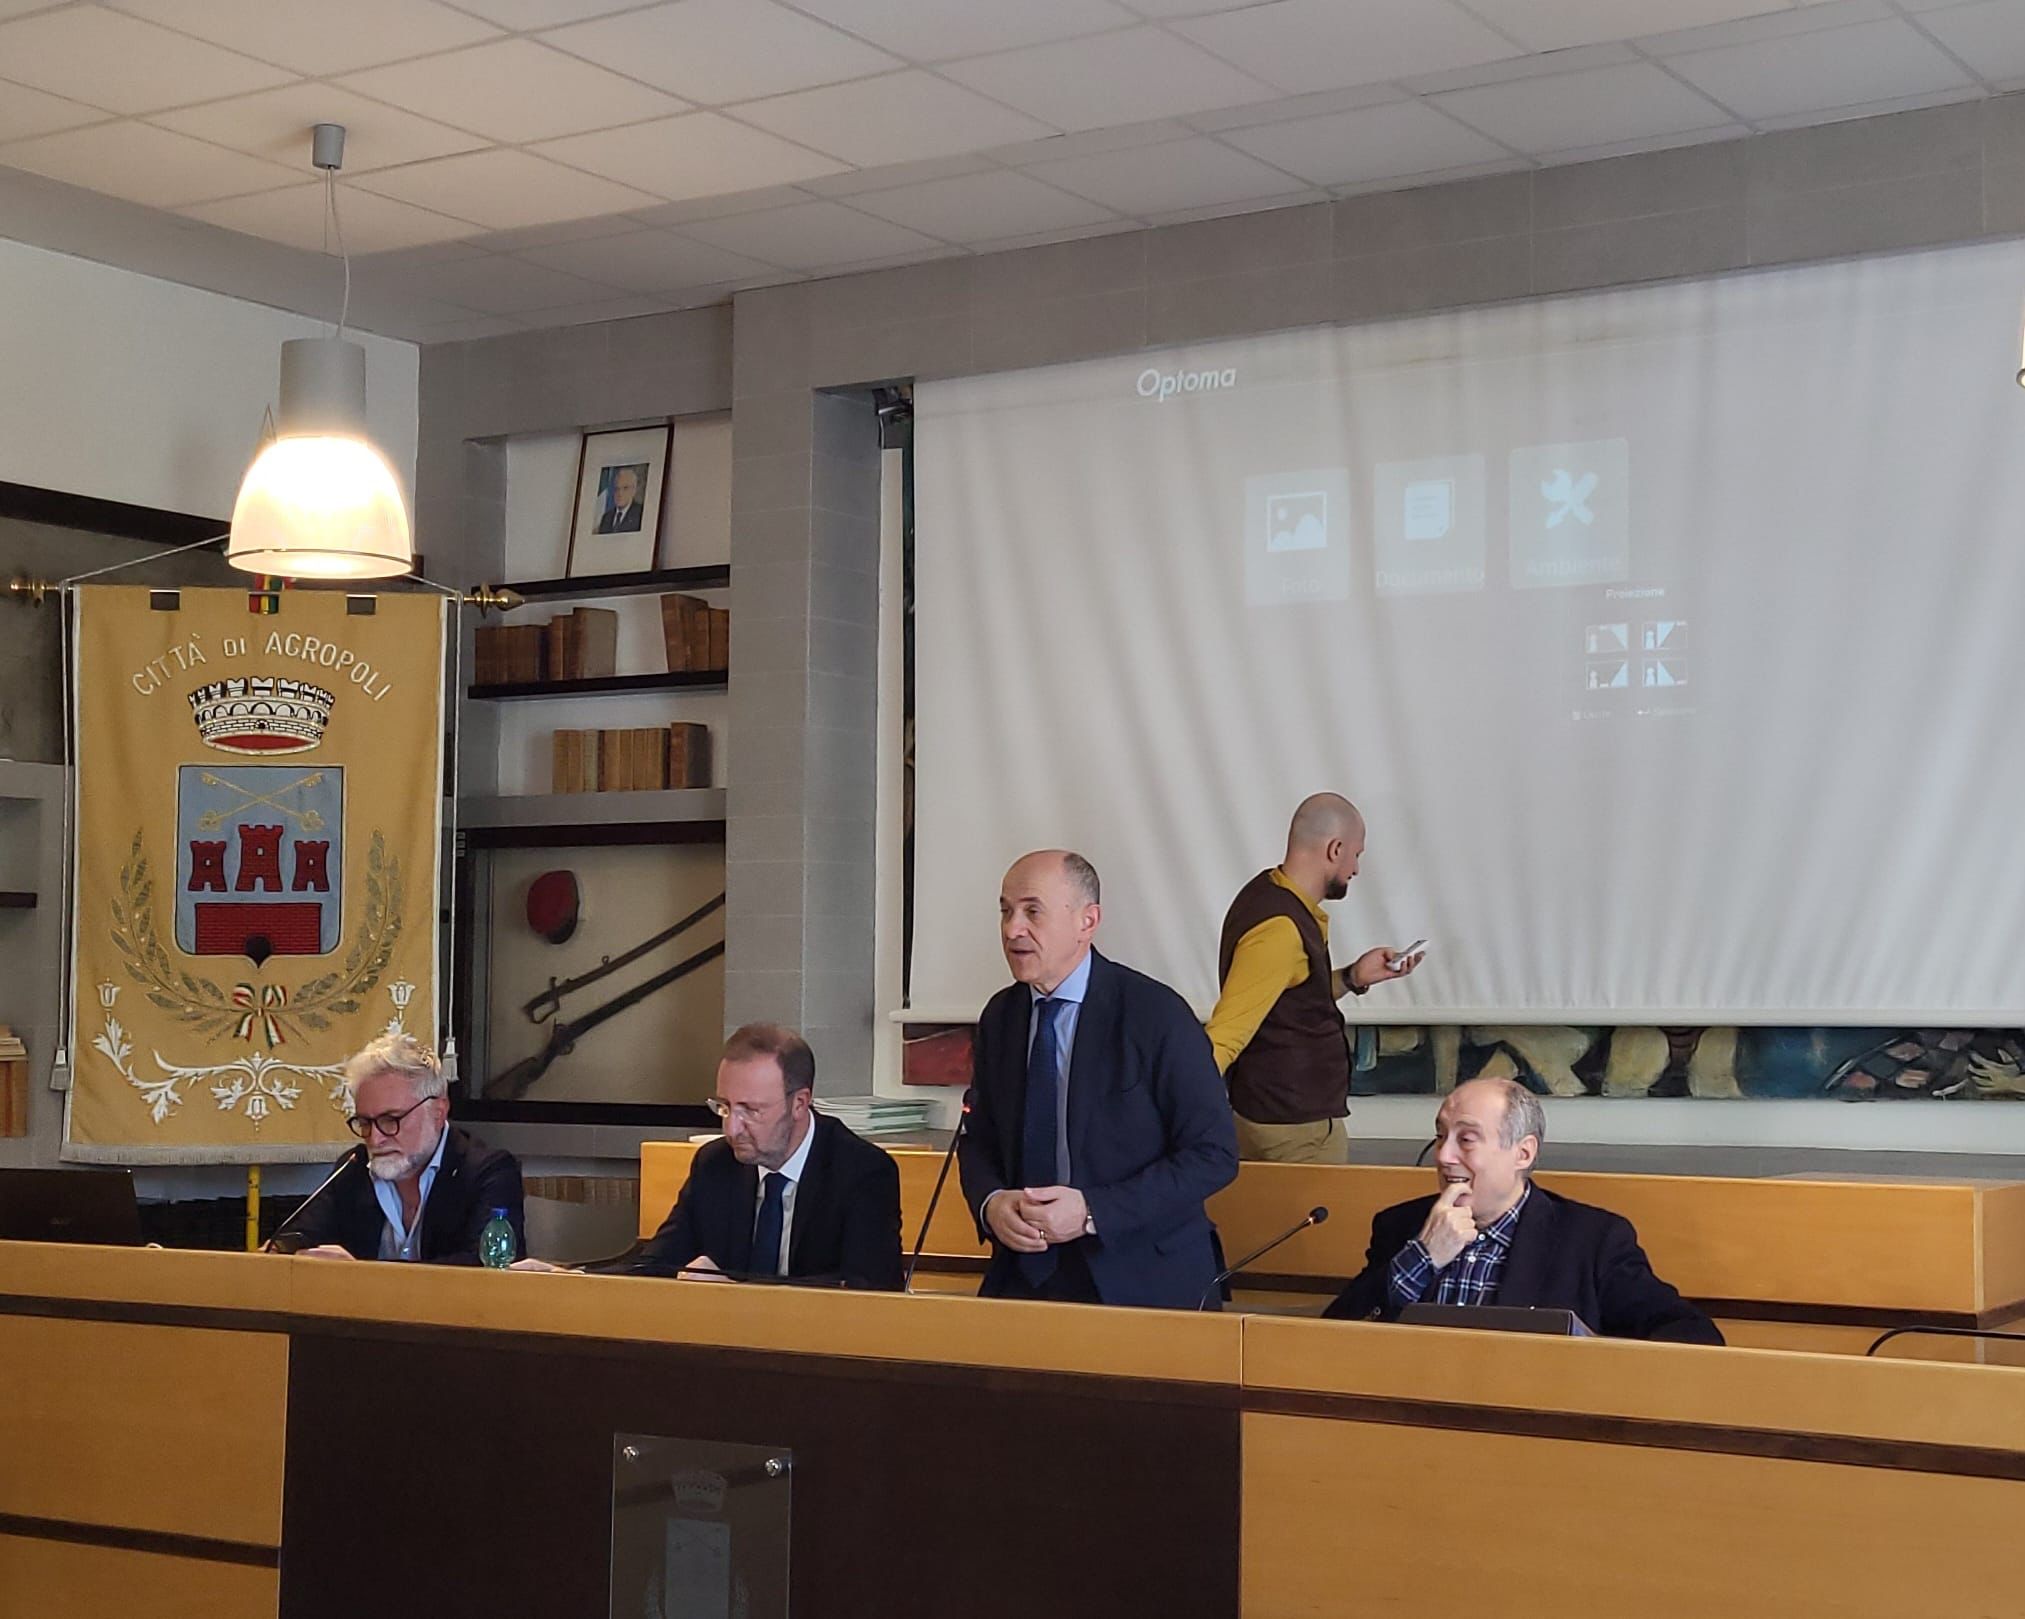 Concorso di idee per la riqualificazione del waterfront di Agropoli: la conferenza stampa